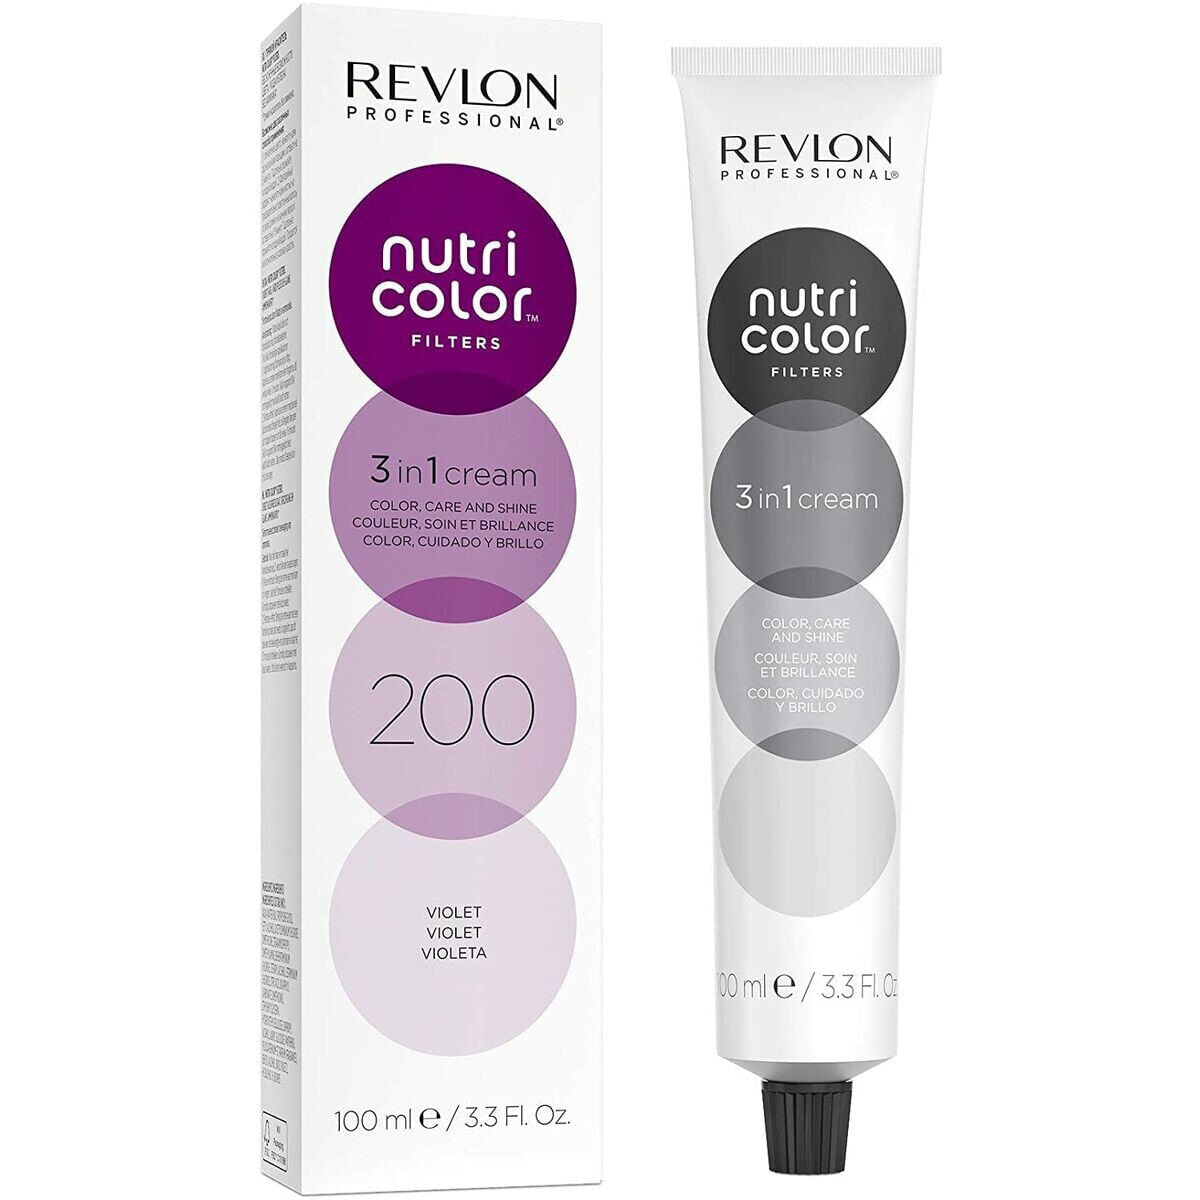 Permanent Colour Creme Revlon Nutri Color Filters Violet Nº 200 (100 ml)